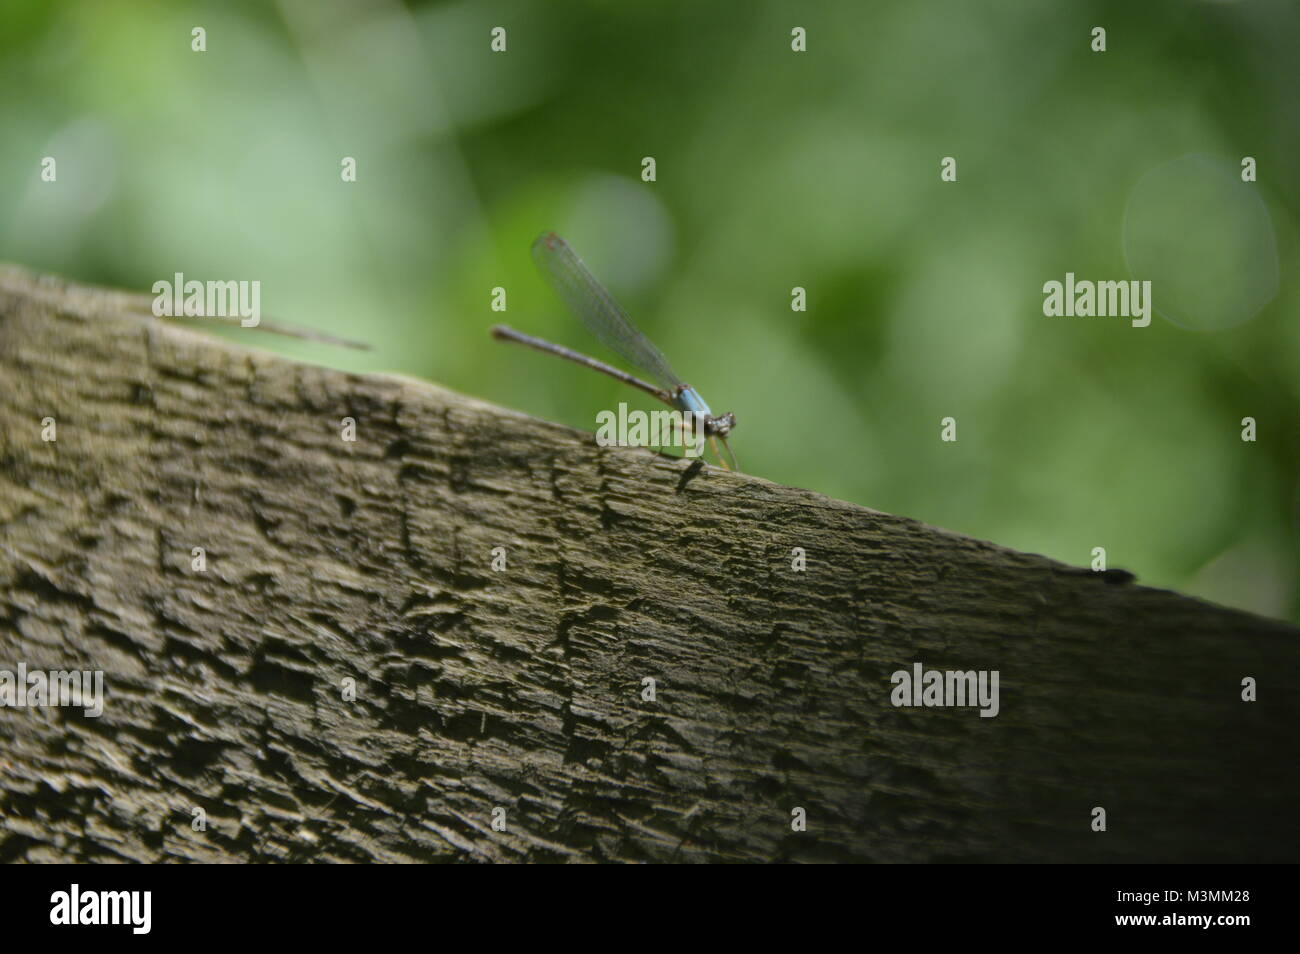 Ein Bild von einem kleinen Libelle. Das Insekt ist blau und braun und sitzt auf einem braun-grauen Rock mit grünem Laub im Hintergrund. Stockfoto